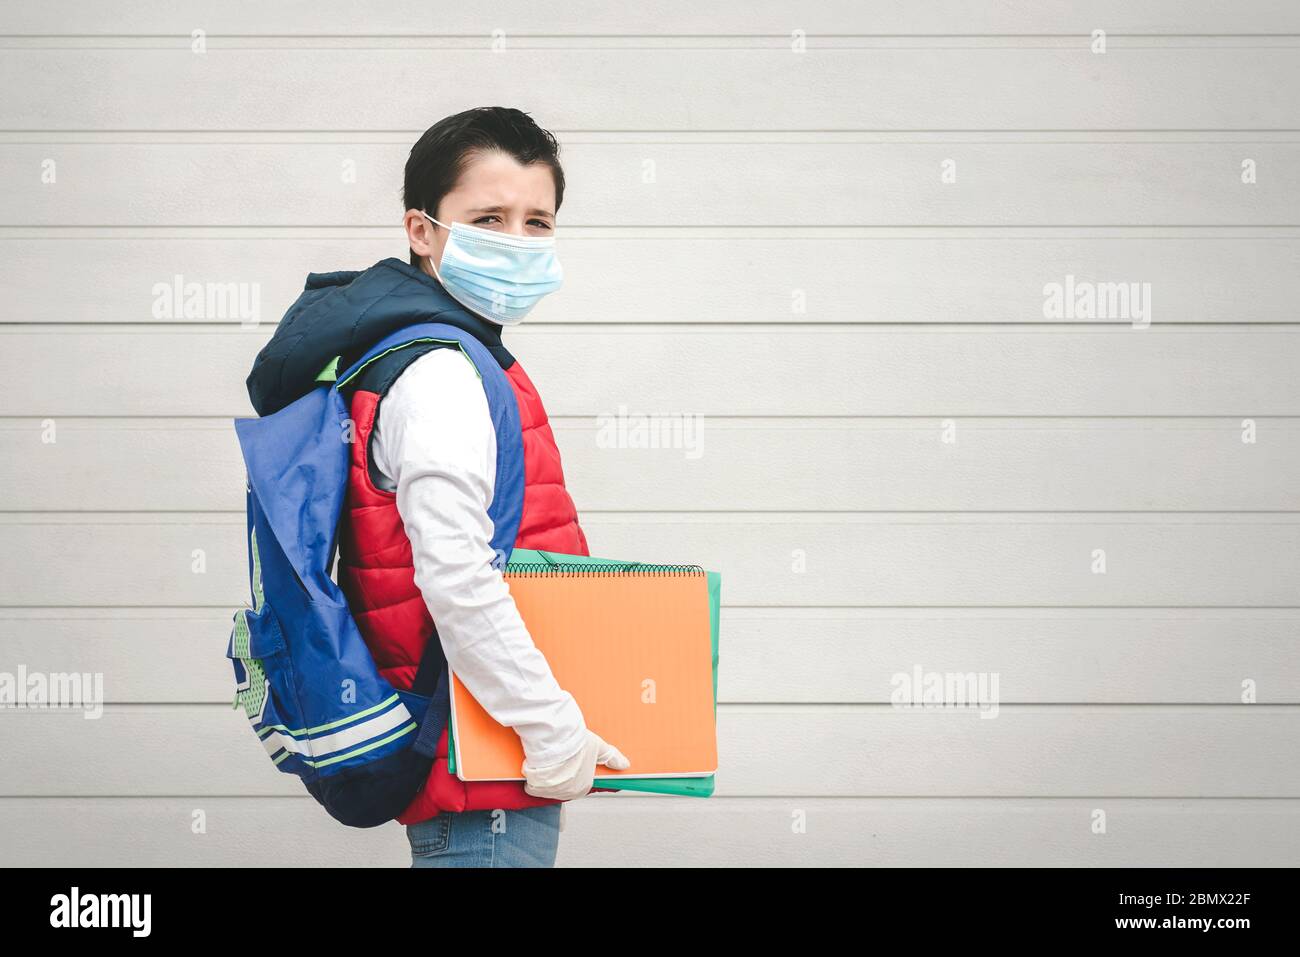 covid-19, ritratto di un bambino con maschera medica e zaino andare a scuola all'aperto Foto Stock